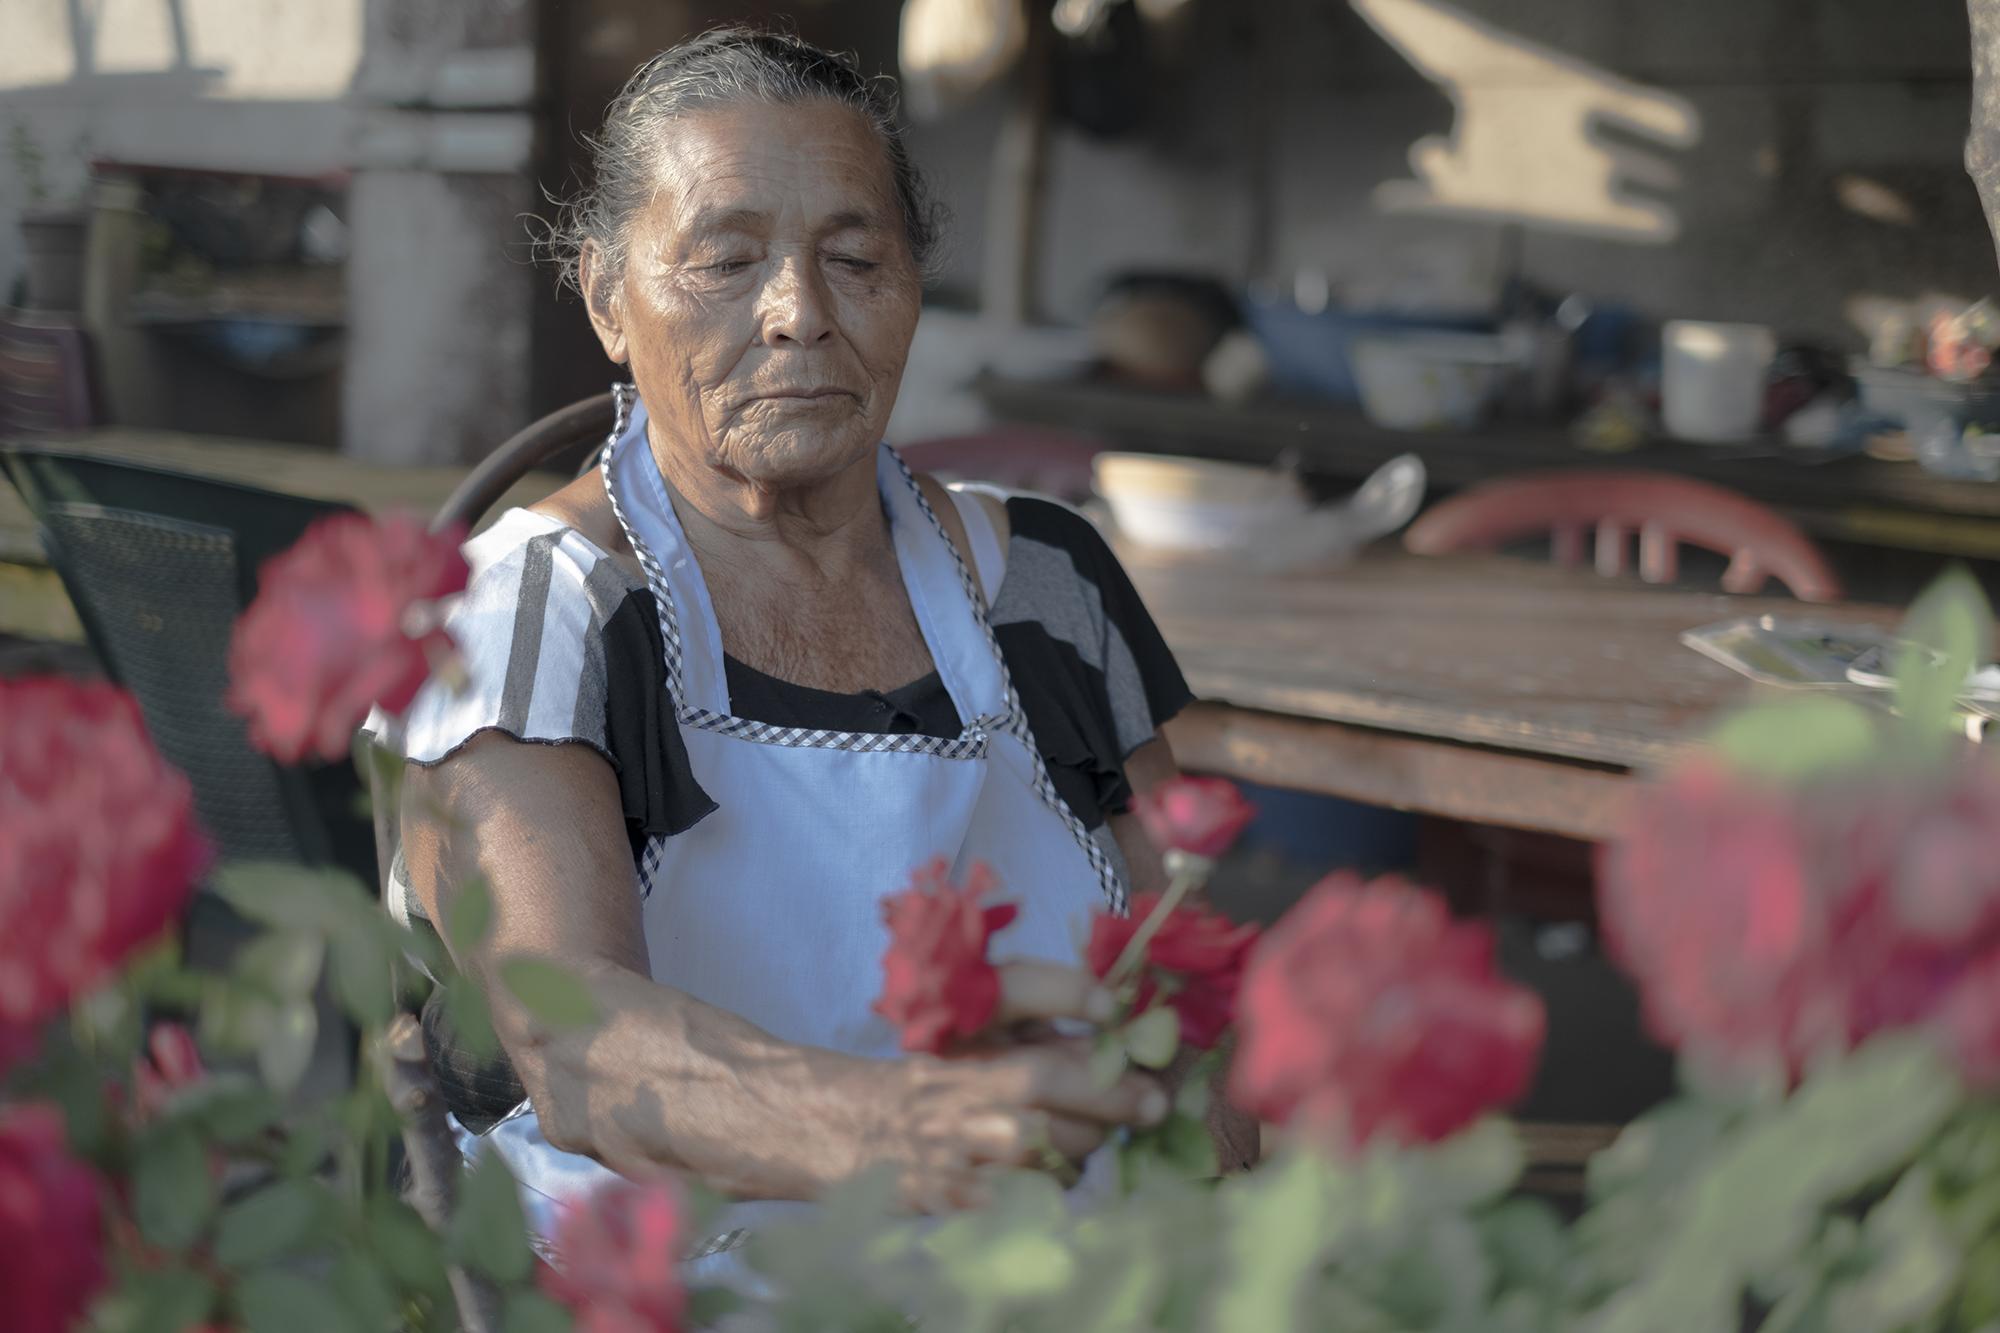 María Inglés tiene 74 años. Se dedica a vender tortillas y comida con sus hijas, pero desde que se decretó la cuarentena han dejado de vender. María no fue beneficiada con el bono de $300 que entregará el gobierno. 